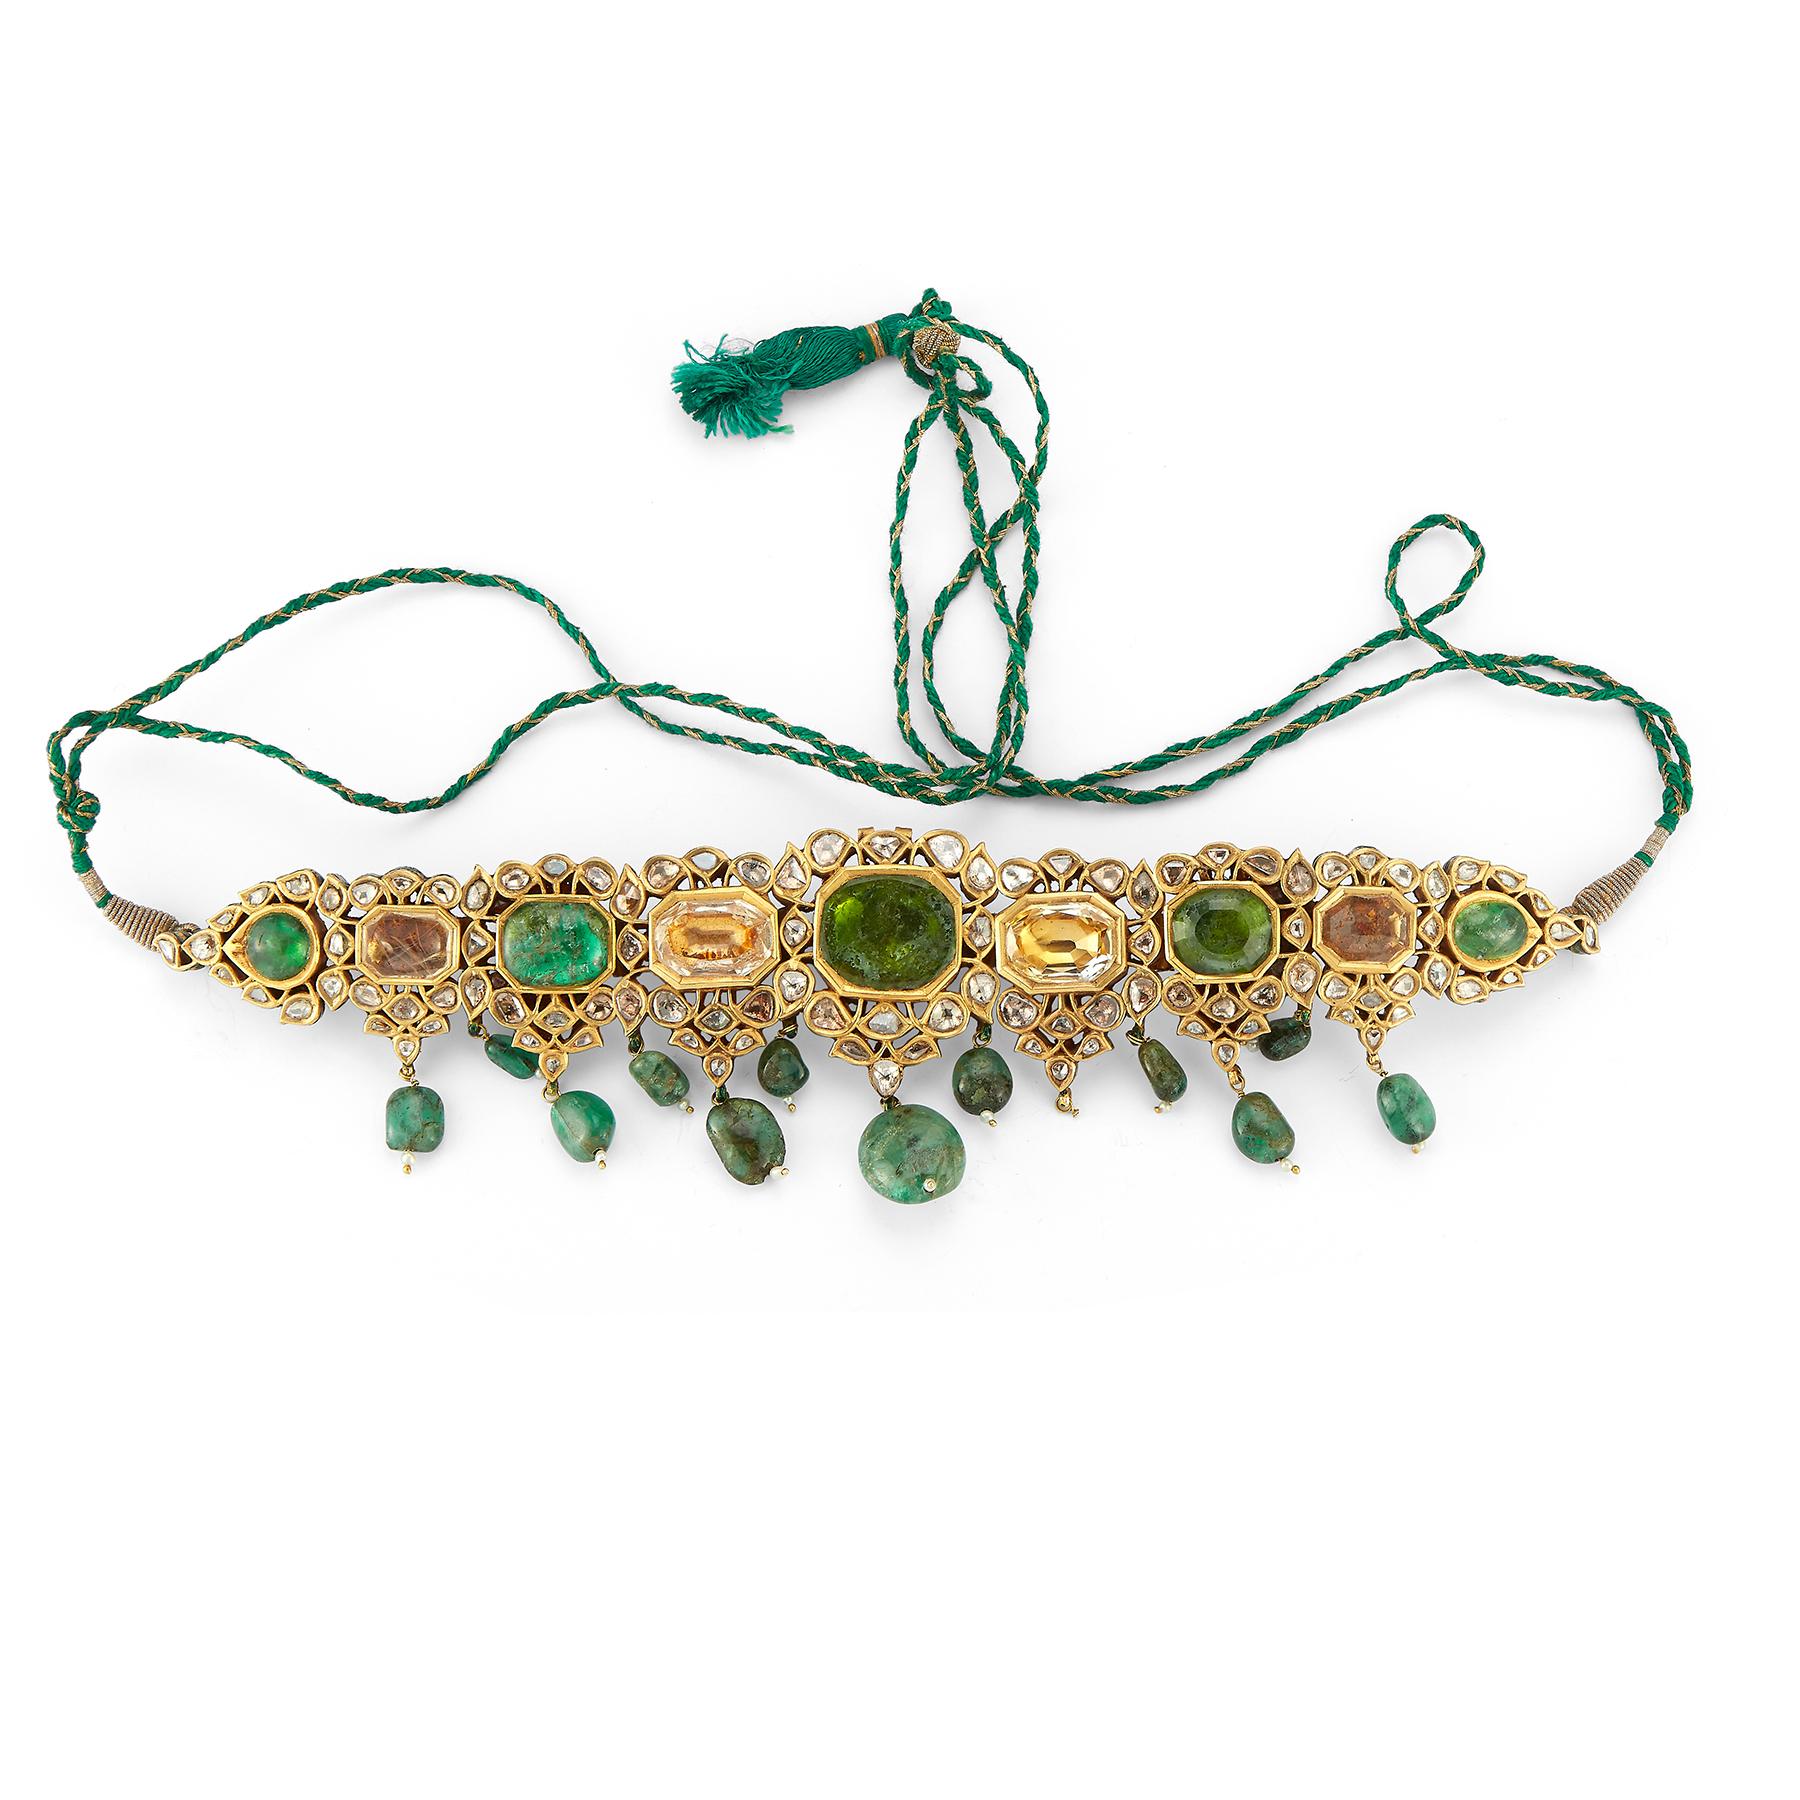 Indische Mughal-Smaragd-Halskette
Mit kunstvoller Handemaillierung auf der Rückseite
Kordel in der Länge verstellbar
Hergestellt um 1850
Abmessungen: 8.5